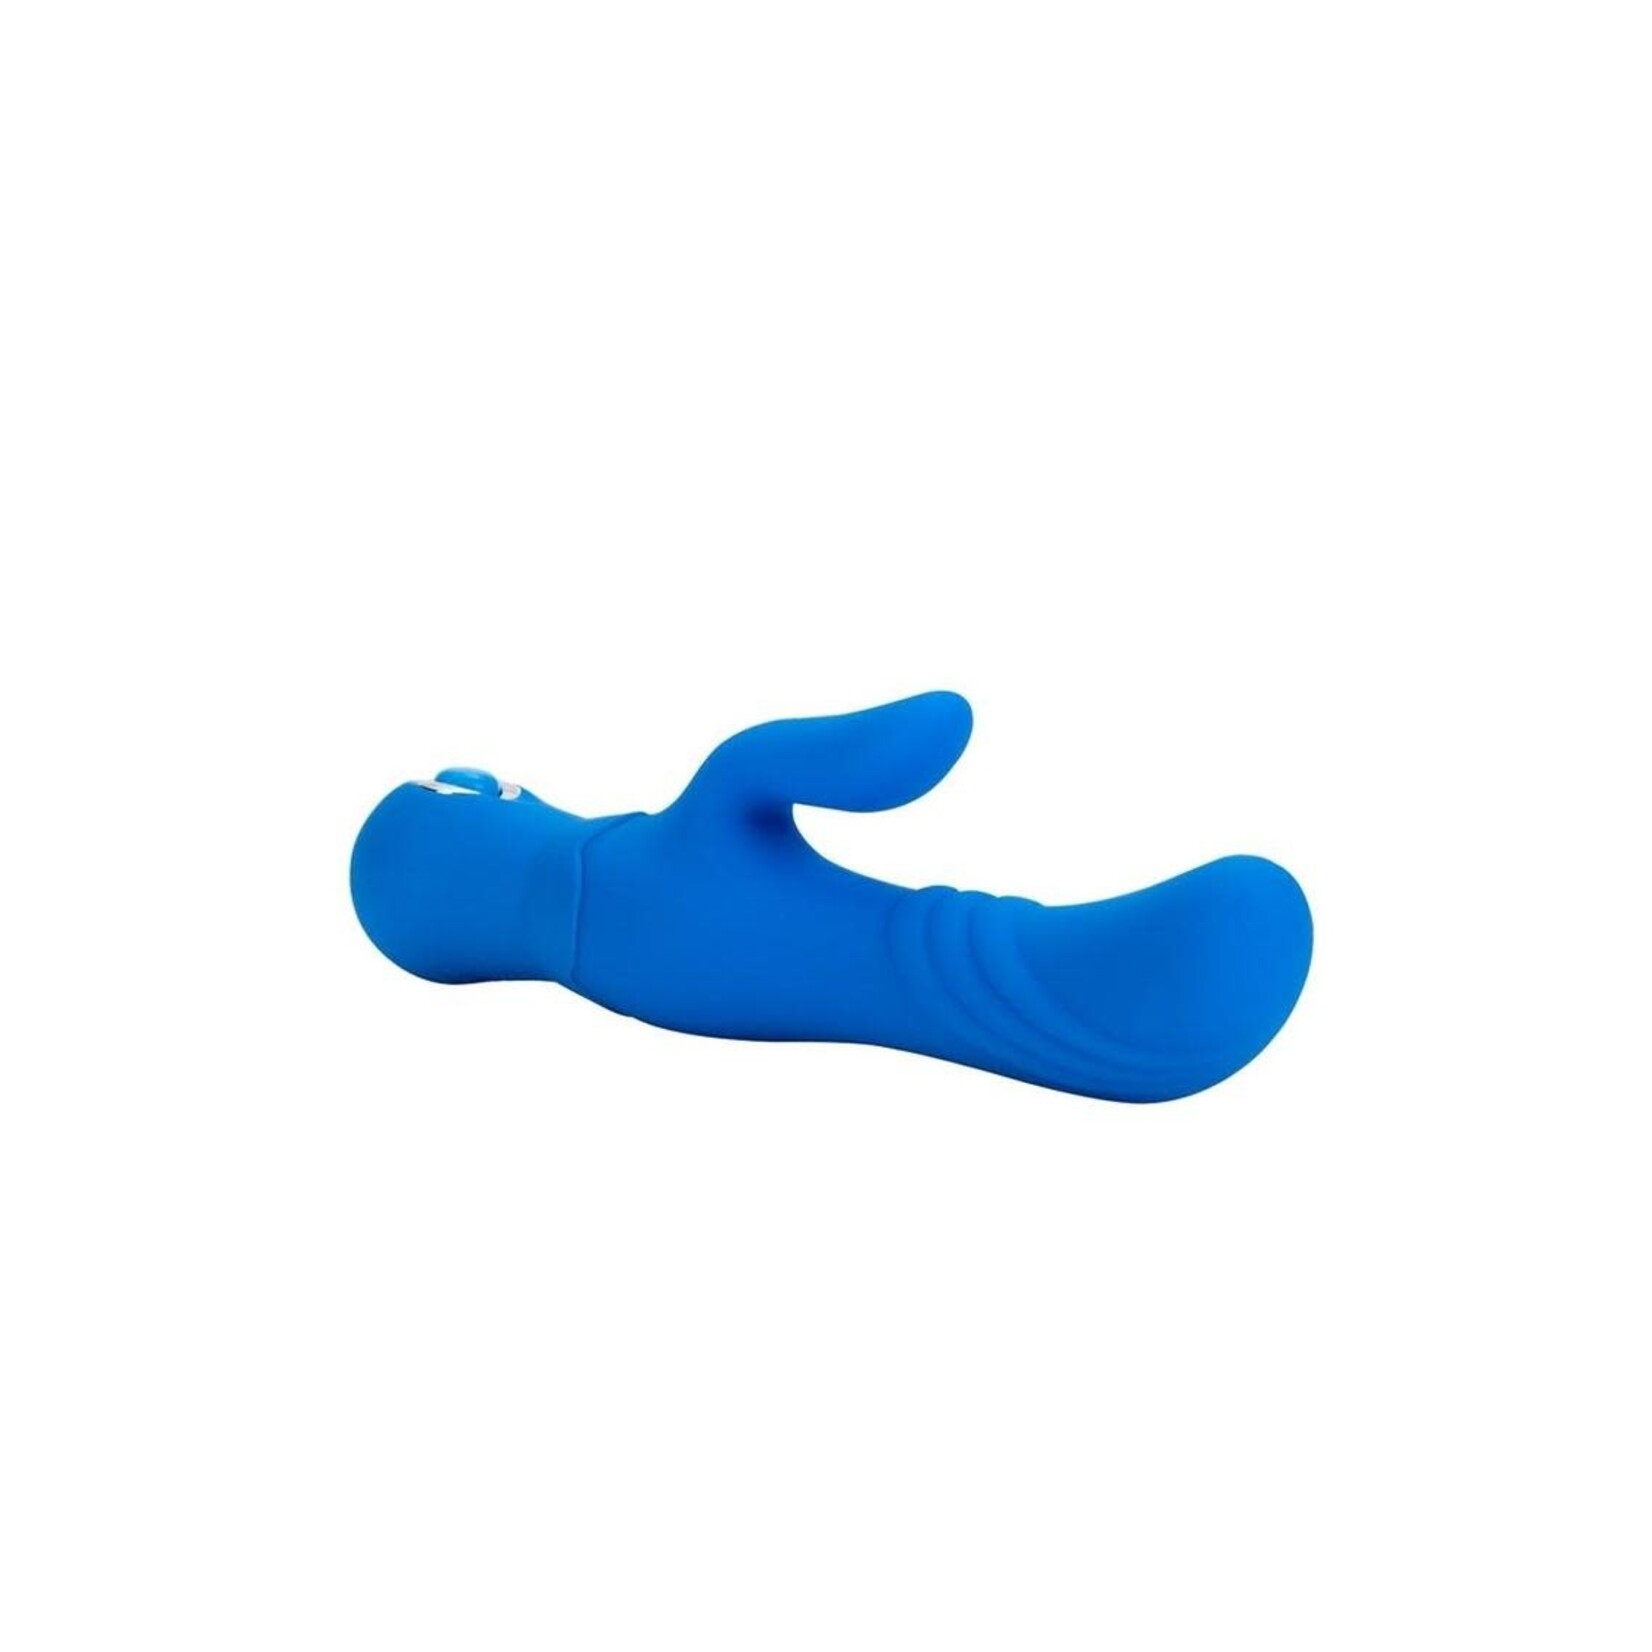 Thumper G Silicone Rabbit Vibrator - Blue